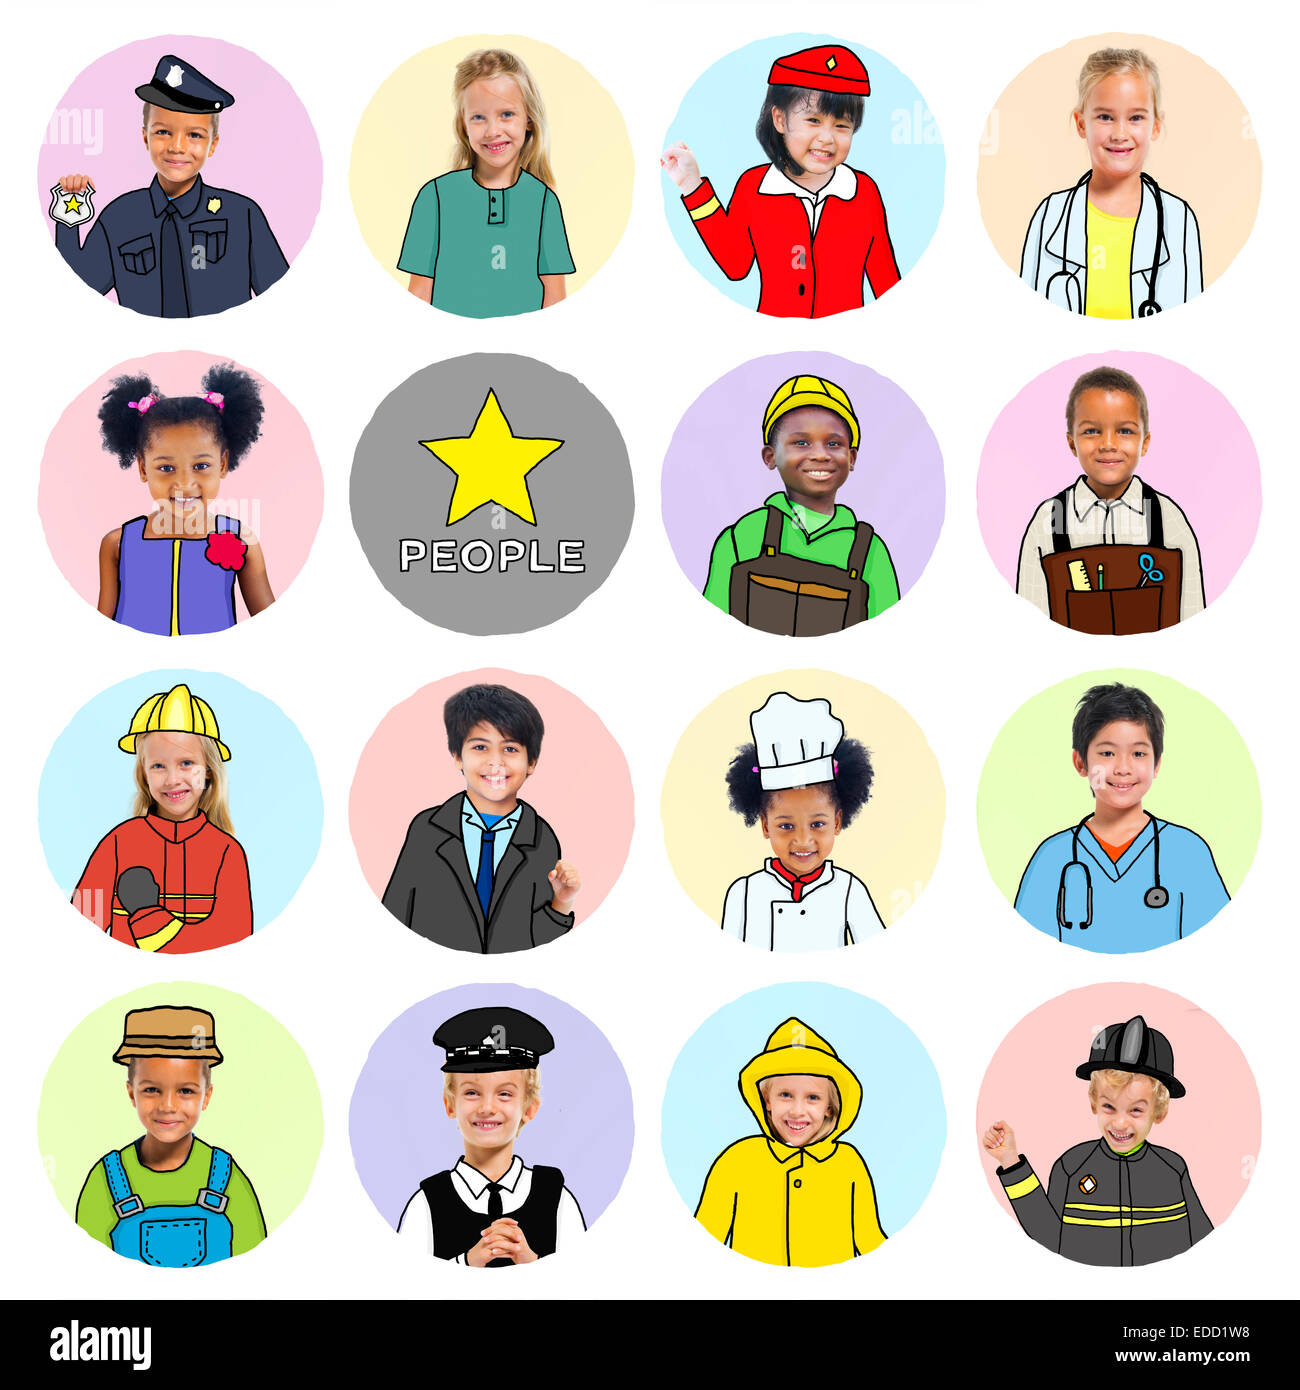 Multiethnische Gruppe von Kindern mit verschiedenen Jobs Konzepte Stockfoto